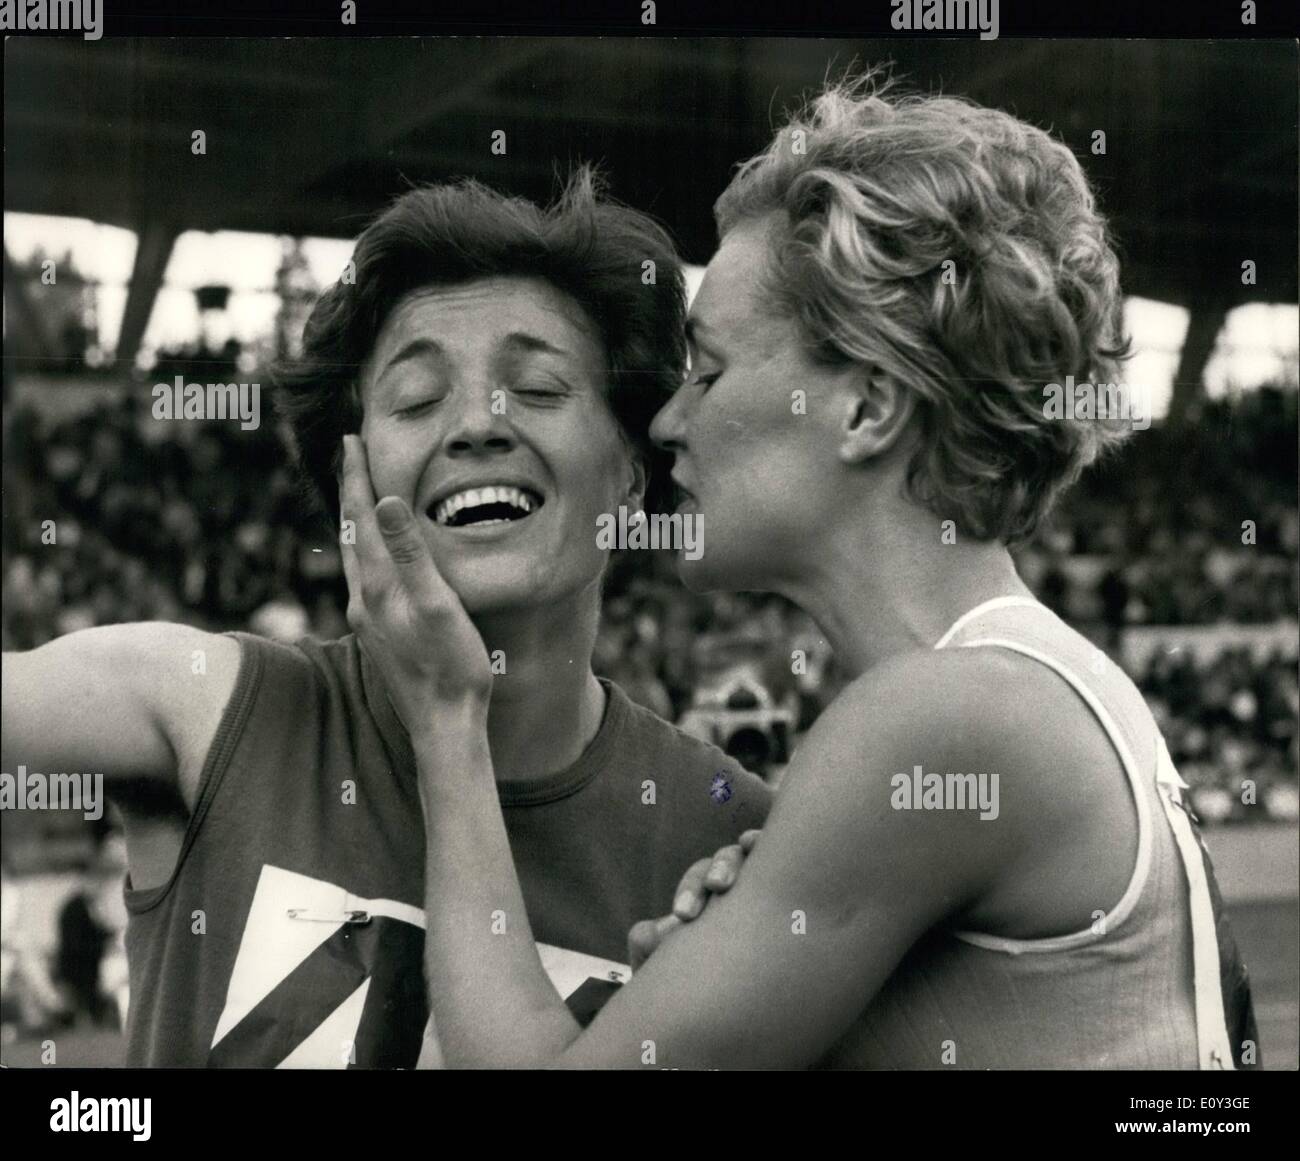 Lug. 07, 1968 - Una donna A.A.A. Campionati a Crystal Palace. Vera Nikolic rompe mondo 800 metri record. Vera Nikolic della Jugoslavia oggi ha rotto il record del mondo nella finale dei 800 metri, durante la donna A.A.A. Campionati al Crystal Palace di Londra. Il suo tempo è stato di 2 minuti. 0,5 s. Lillian bordo, ( Londra Olympiade A.C.) era secondo in 2 minuti. 2 sec - un Regno Unito ( All-Comers ) record. Mostra fotografica di Vera Nikolic ( a sinistra ) ottiene un bacio di congratulazioni da Lillian Board, venuto secondo - dopo il record di oggi eseguire al Crystal Palace. Foto Stock